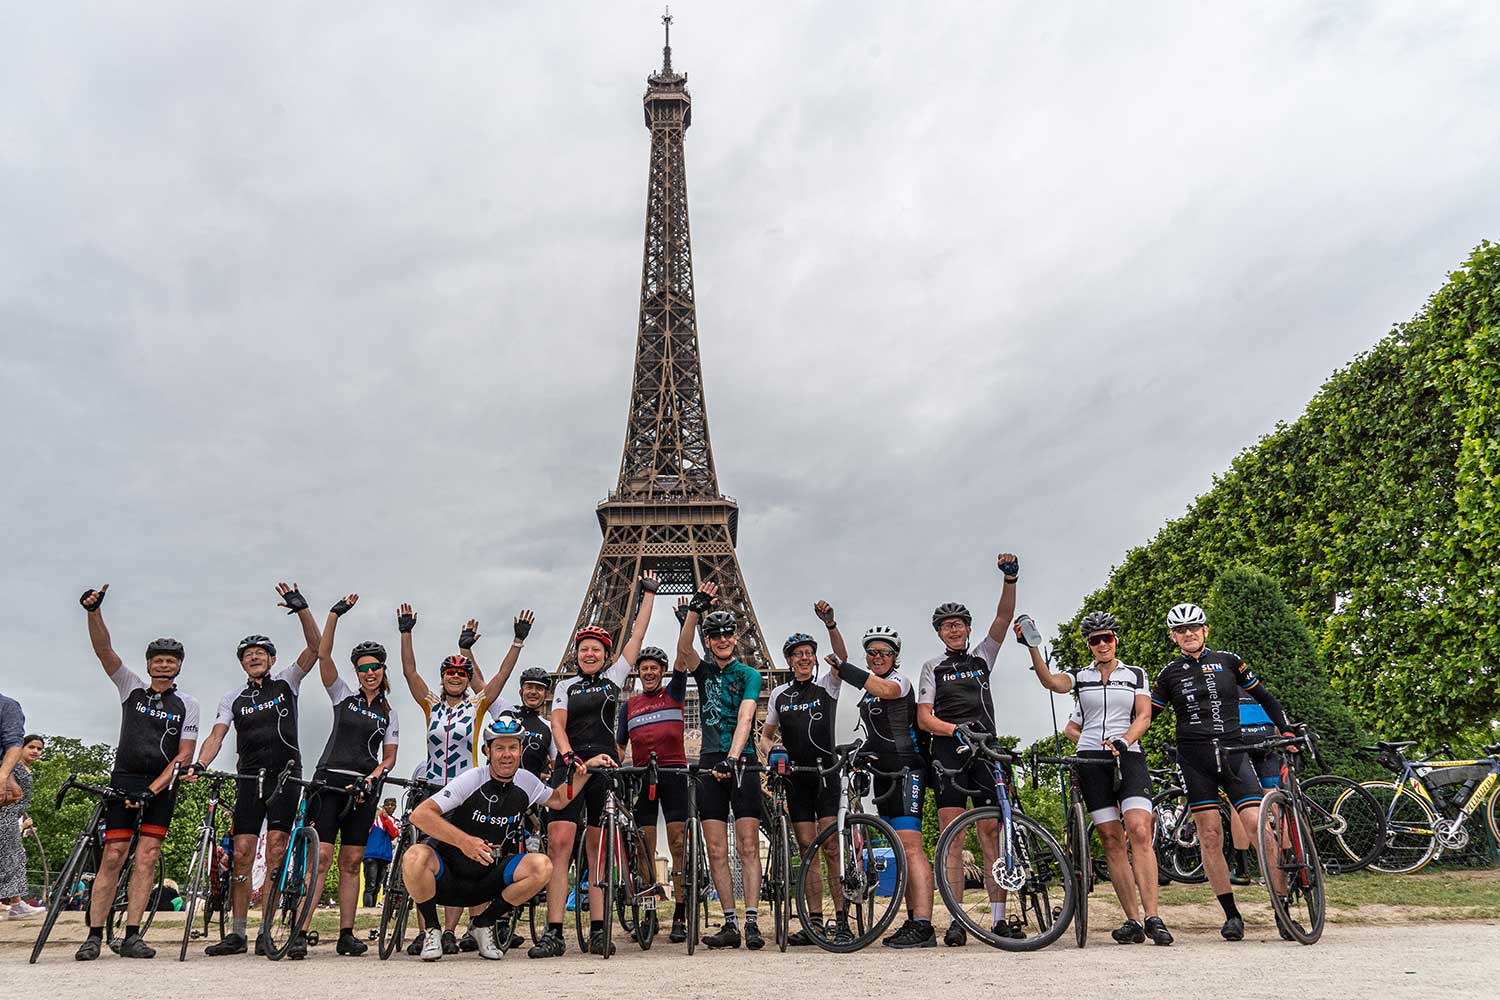 Fietsvakantie Parijs Frankrijk België poseren voor Eiffeltoren